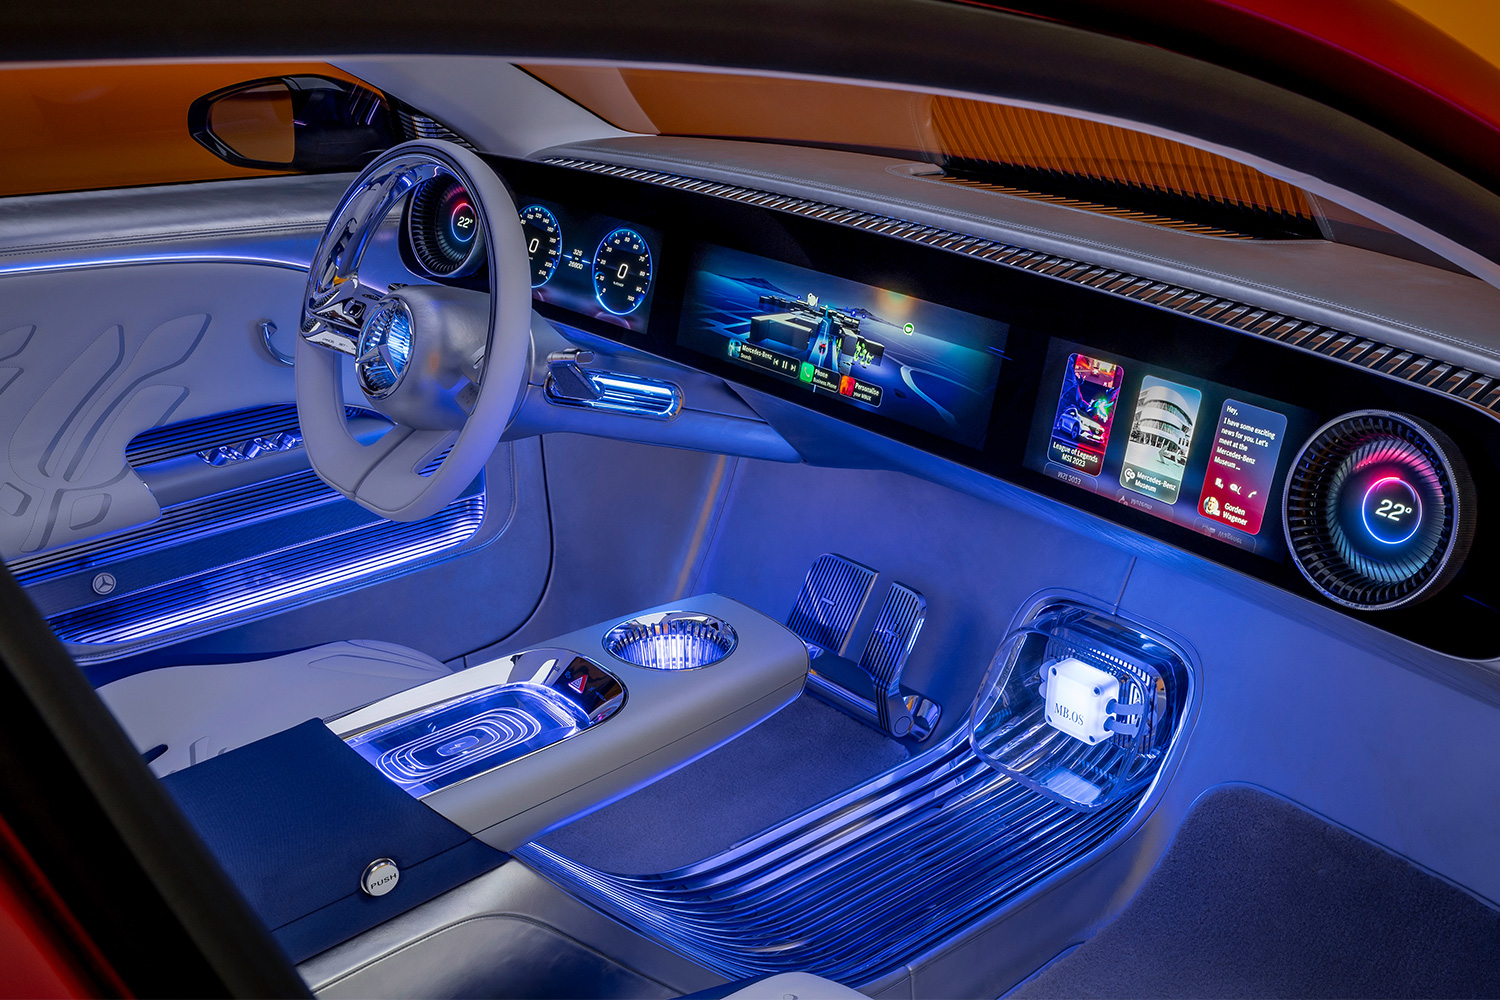 The futuristic interior of the ercedes-Benz Concept CLA Class sedan